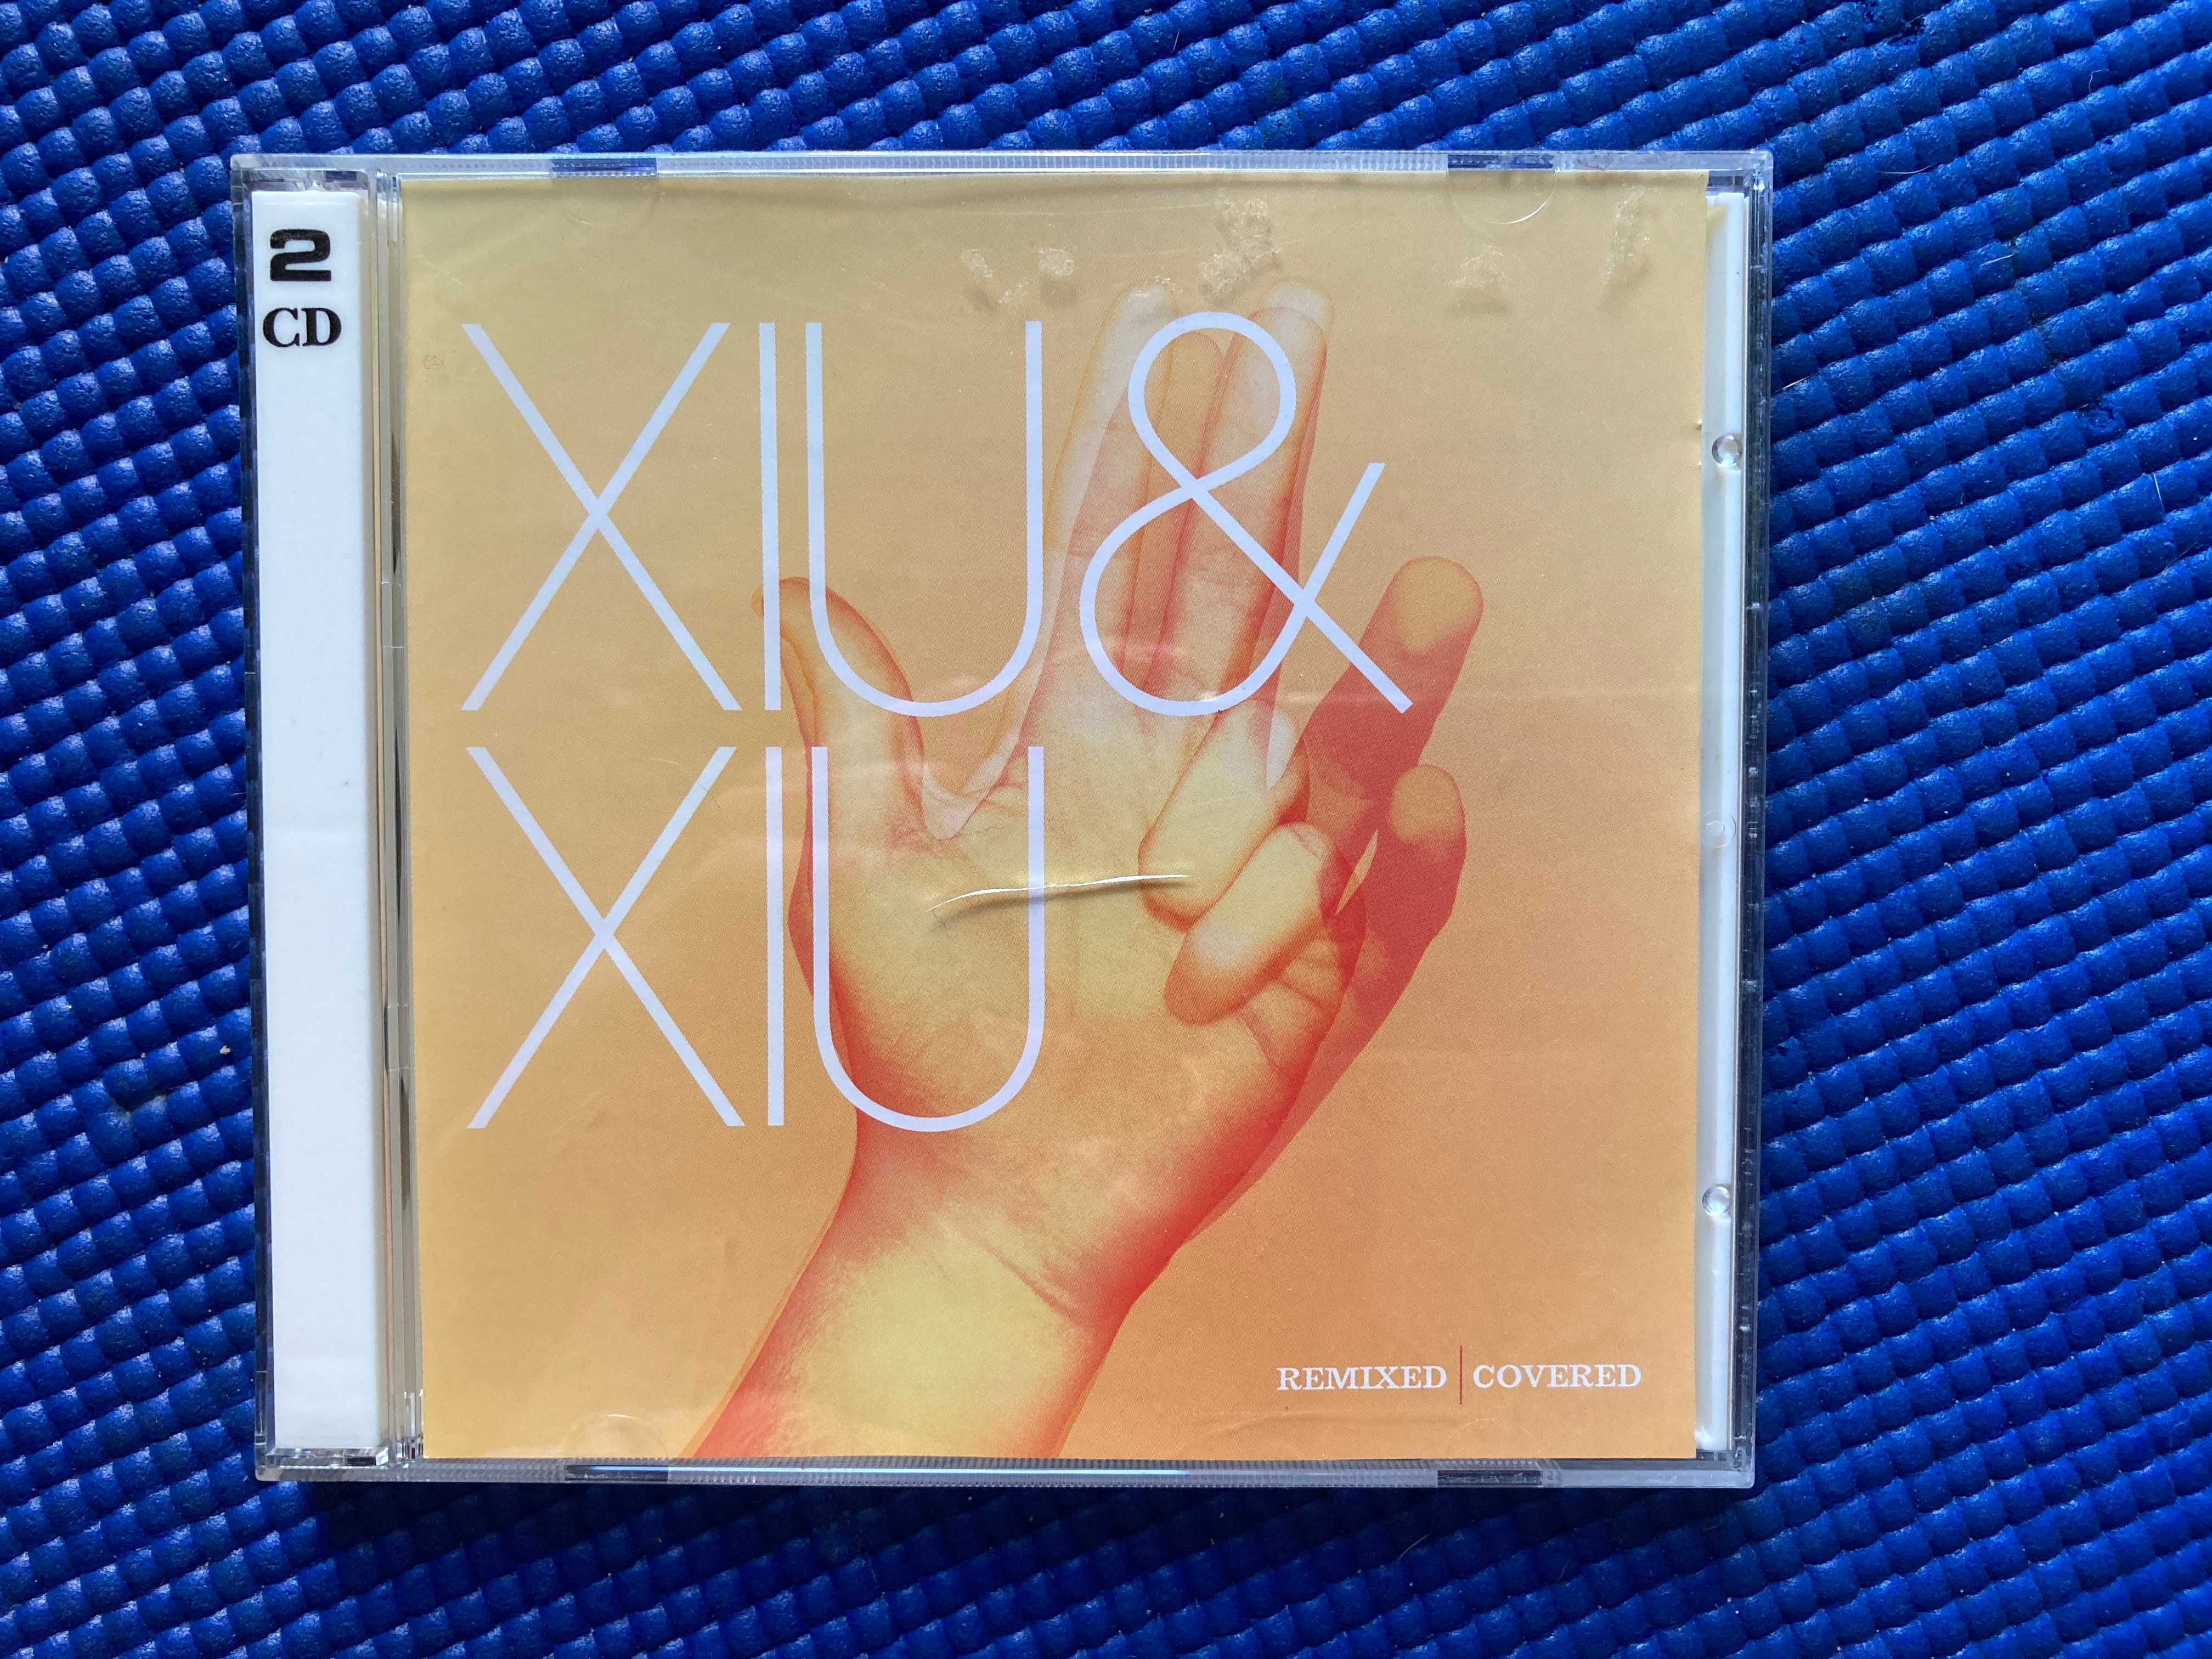 Remixed & Covered, Xiu Xiu, CD